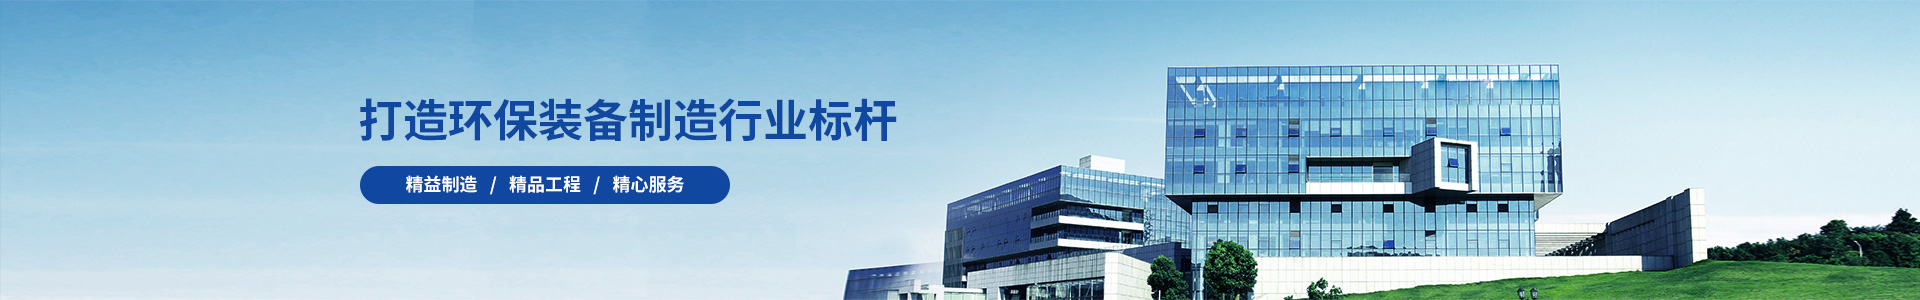 陕西宝徕隆环保设备工程有限公司